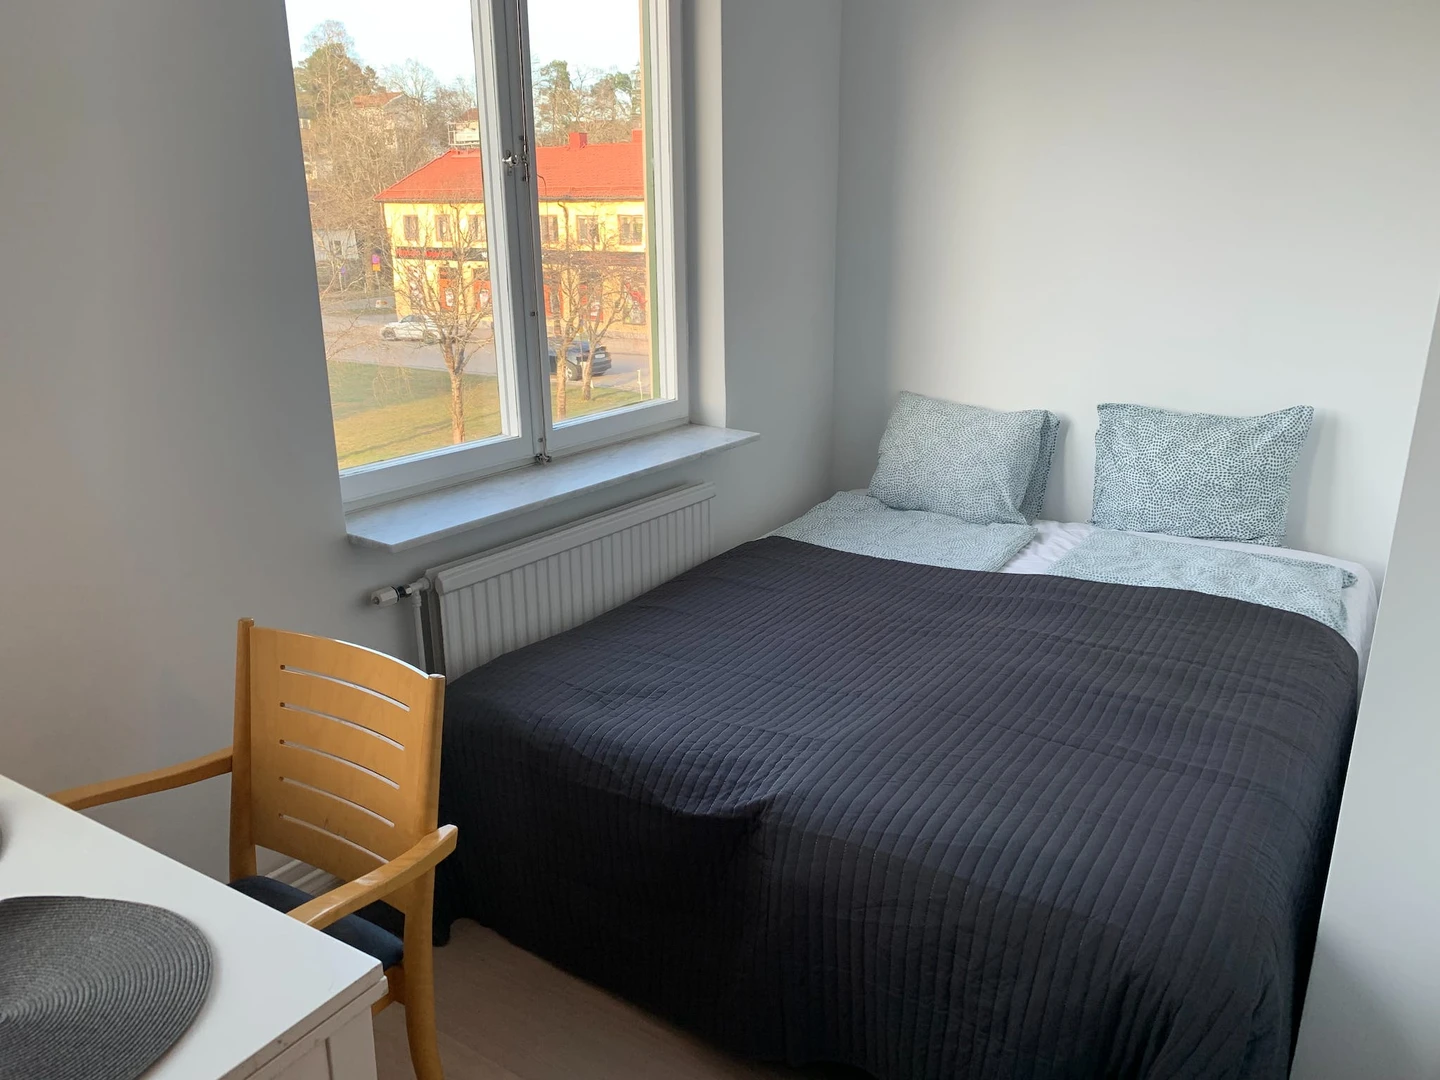 W pełni umeblowane mieszkanie w Sztokholm